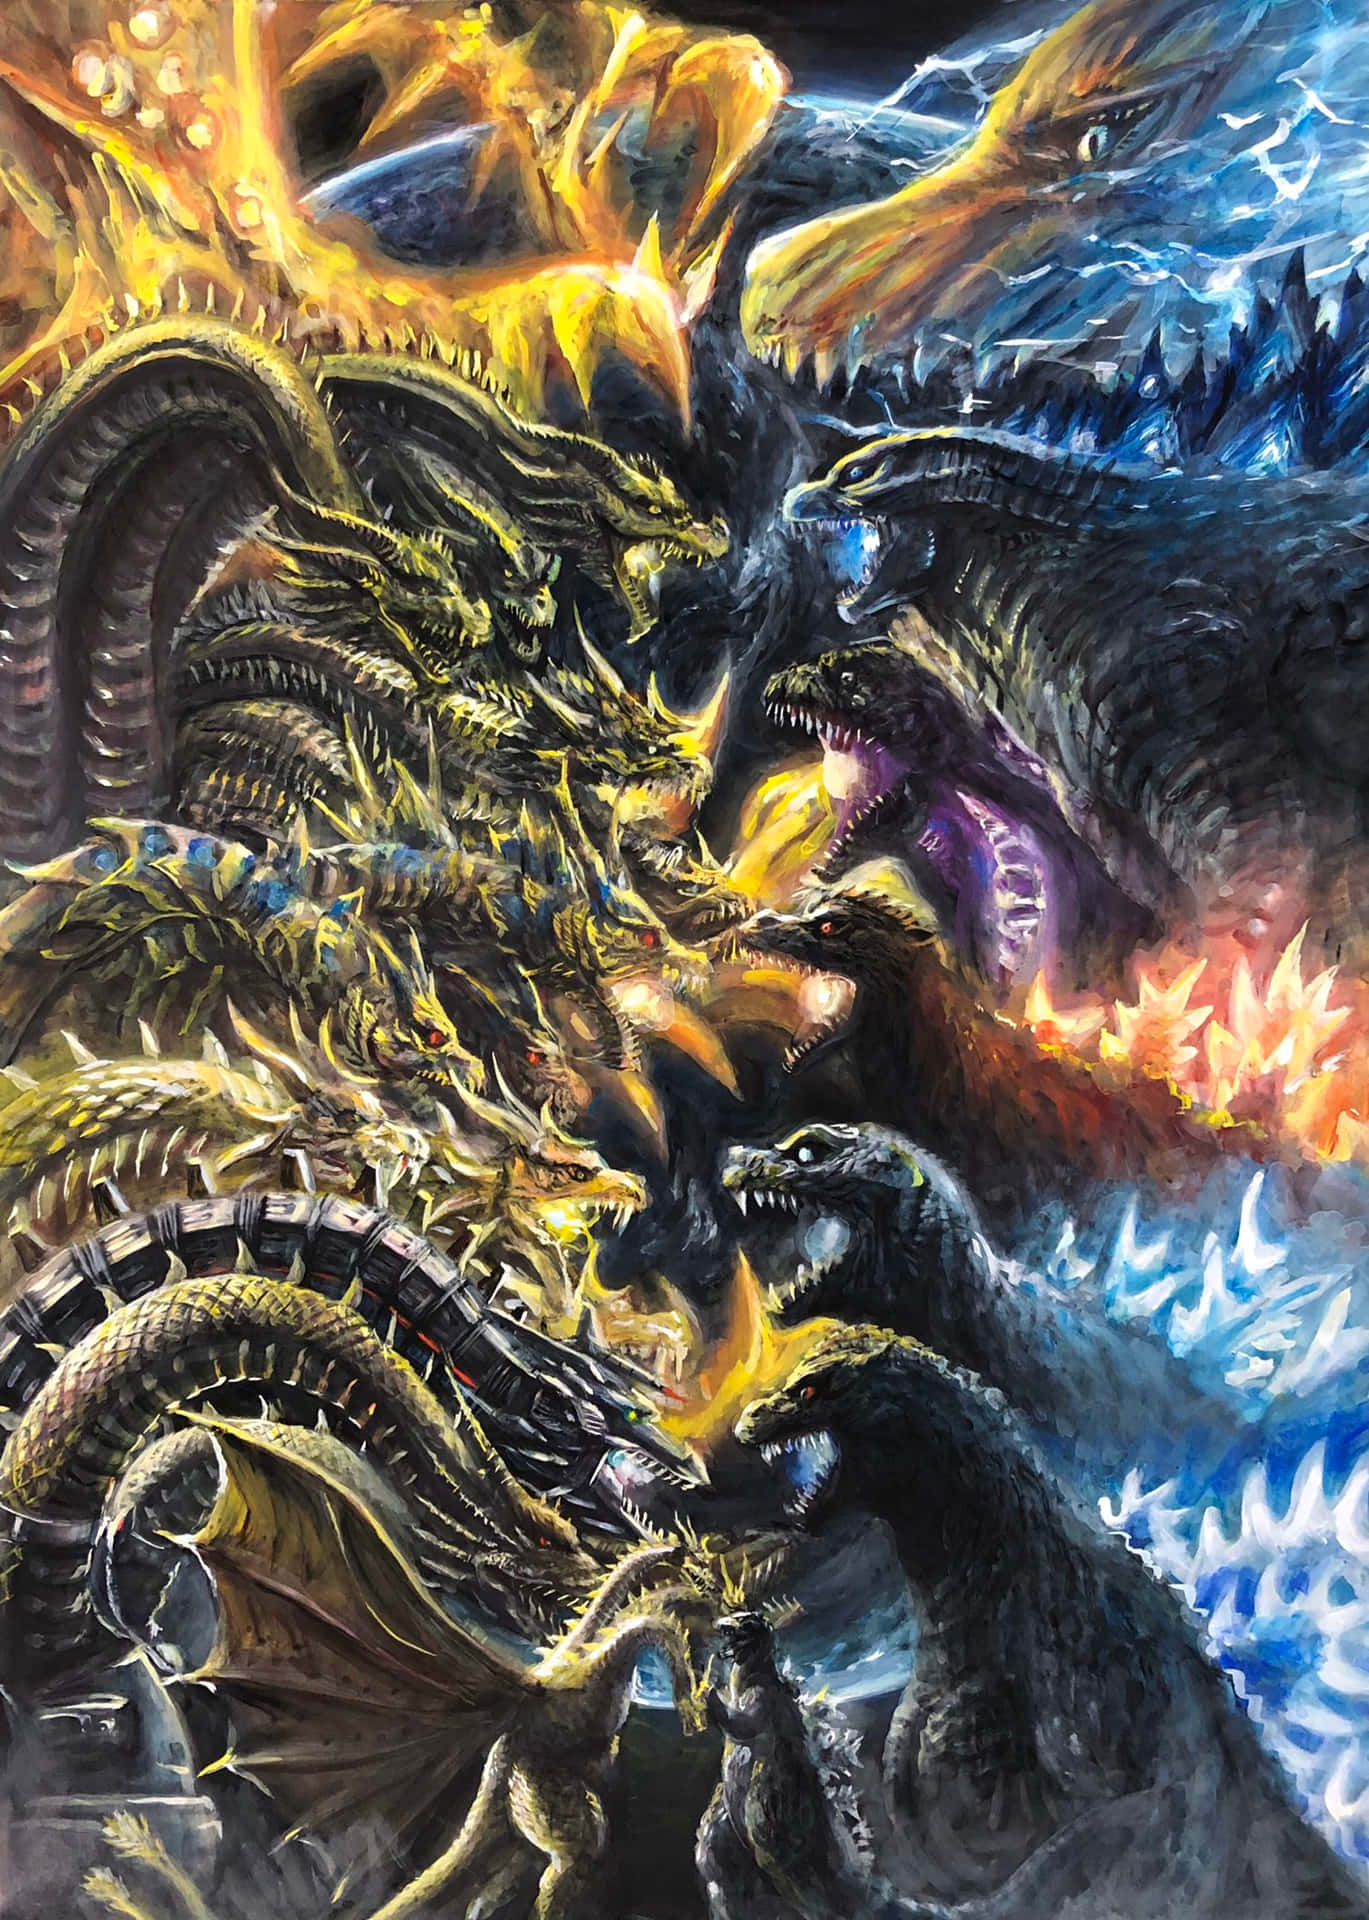 TITANS  Godzilla vs King Ghidorah wallpaper by DarkRider28 on DeviantArt